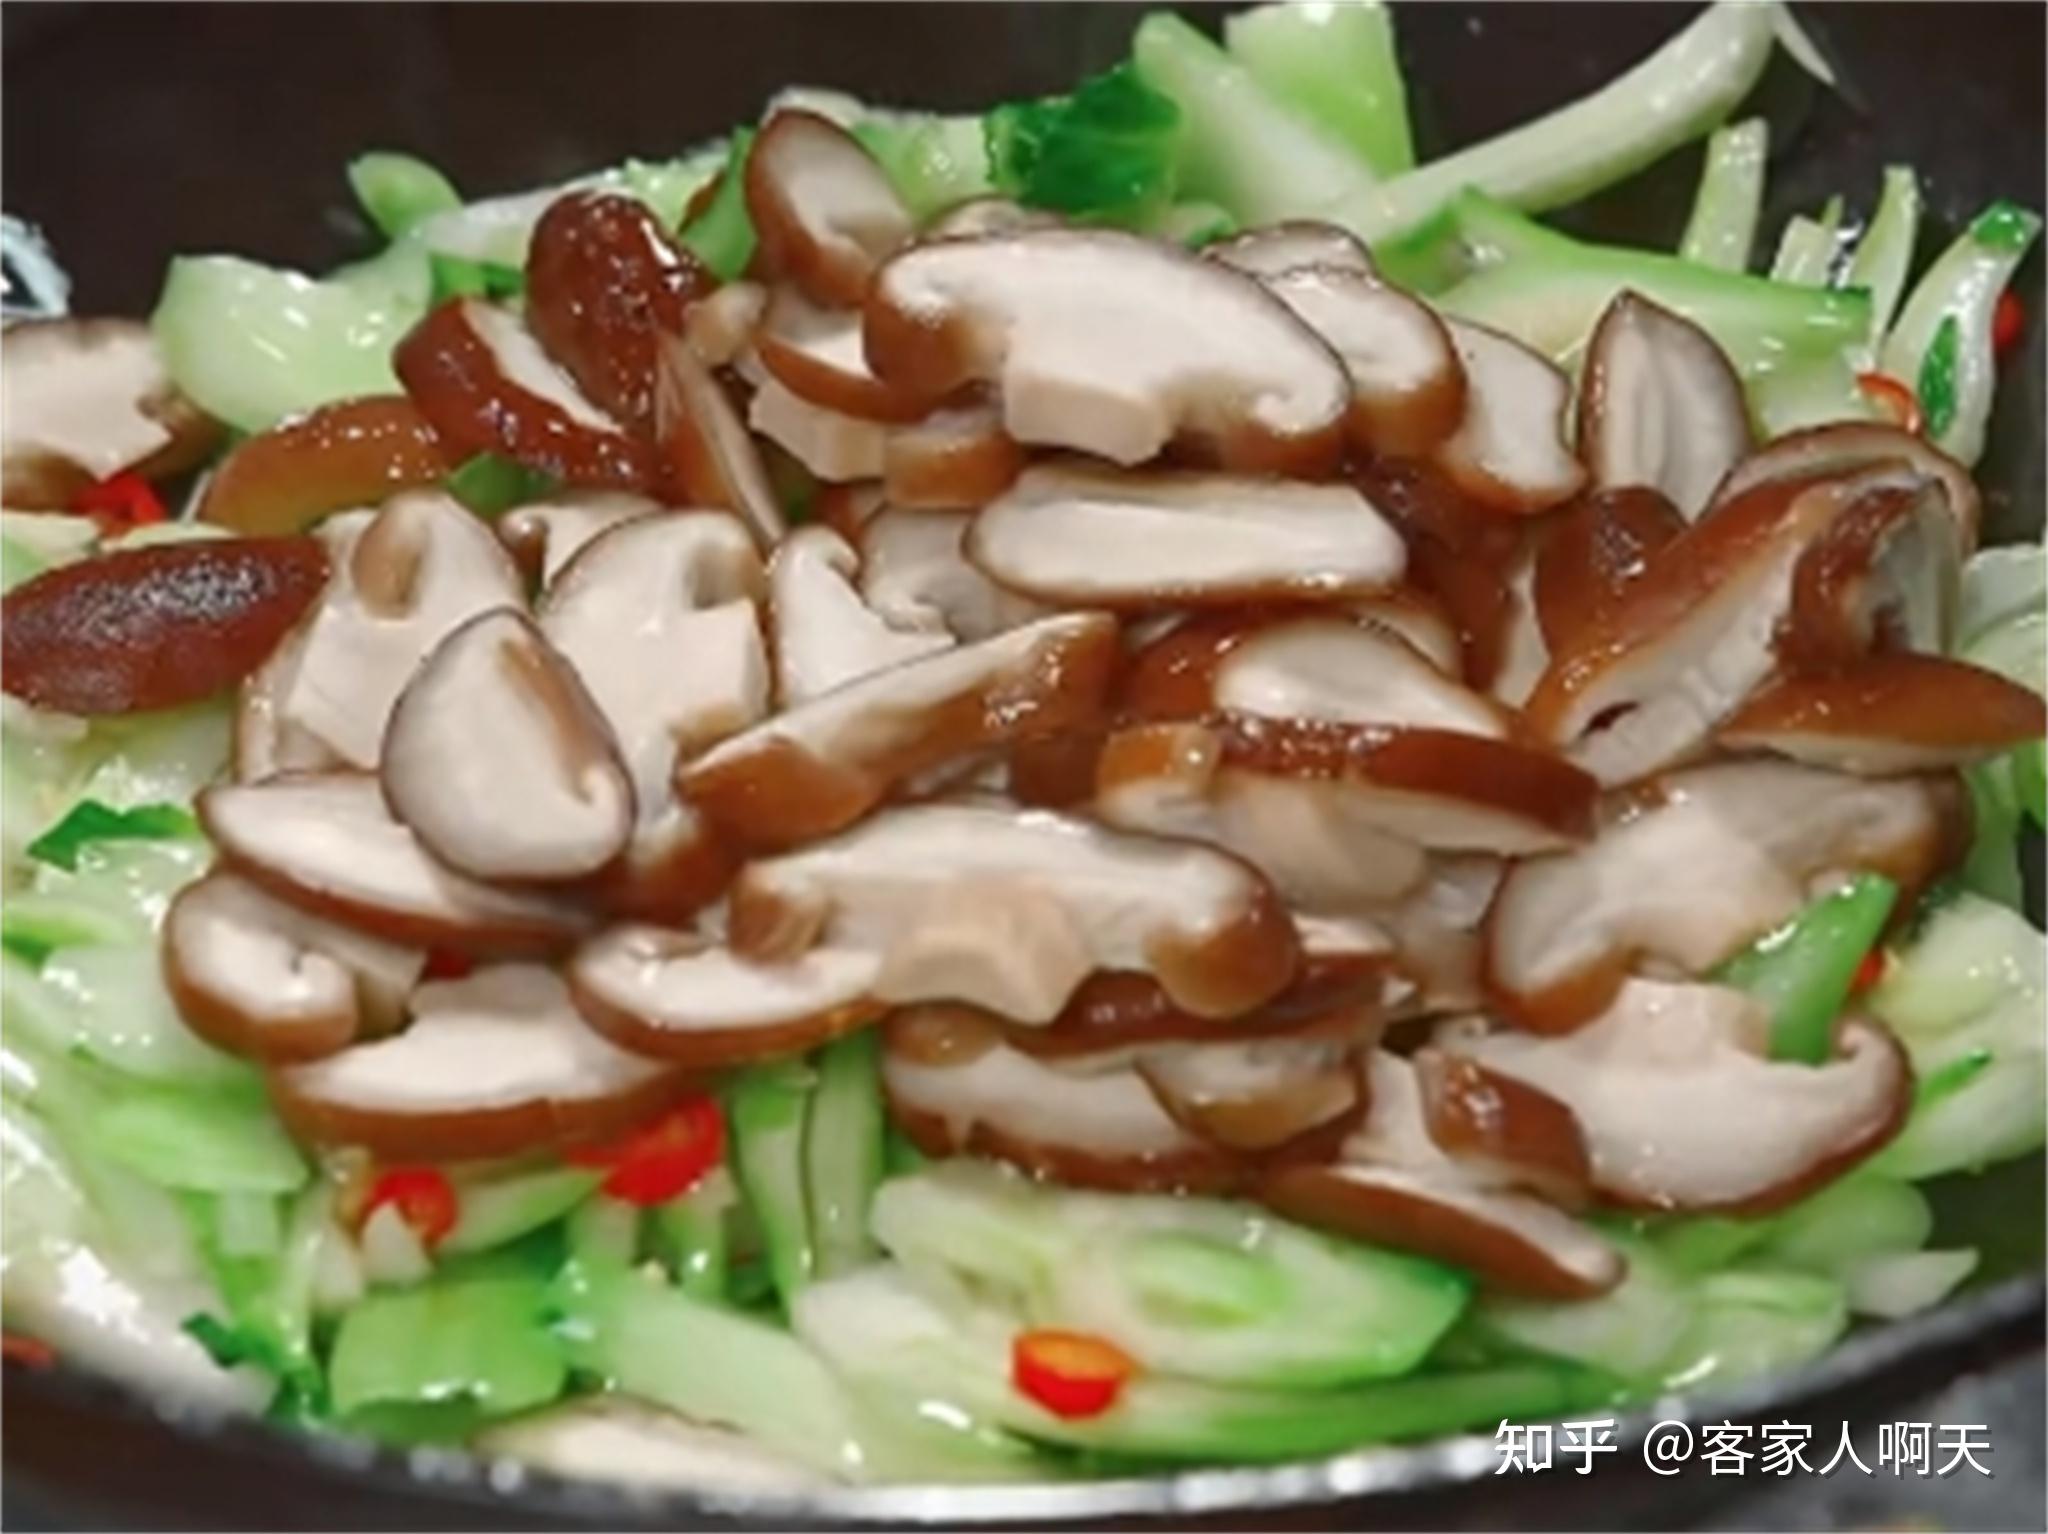 青菜香菇炒油面筋壳,青菜香菇炒油面筋壳的家常做法 - 美食杰青菜香菇炒油面筋壳做法大全